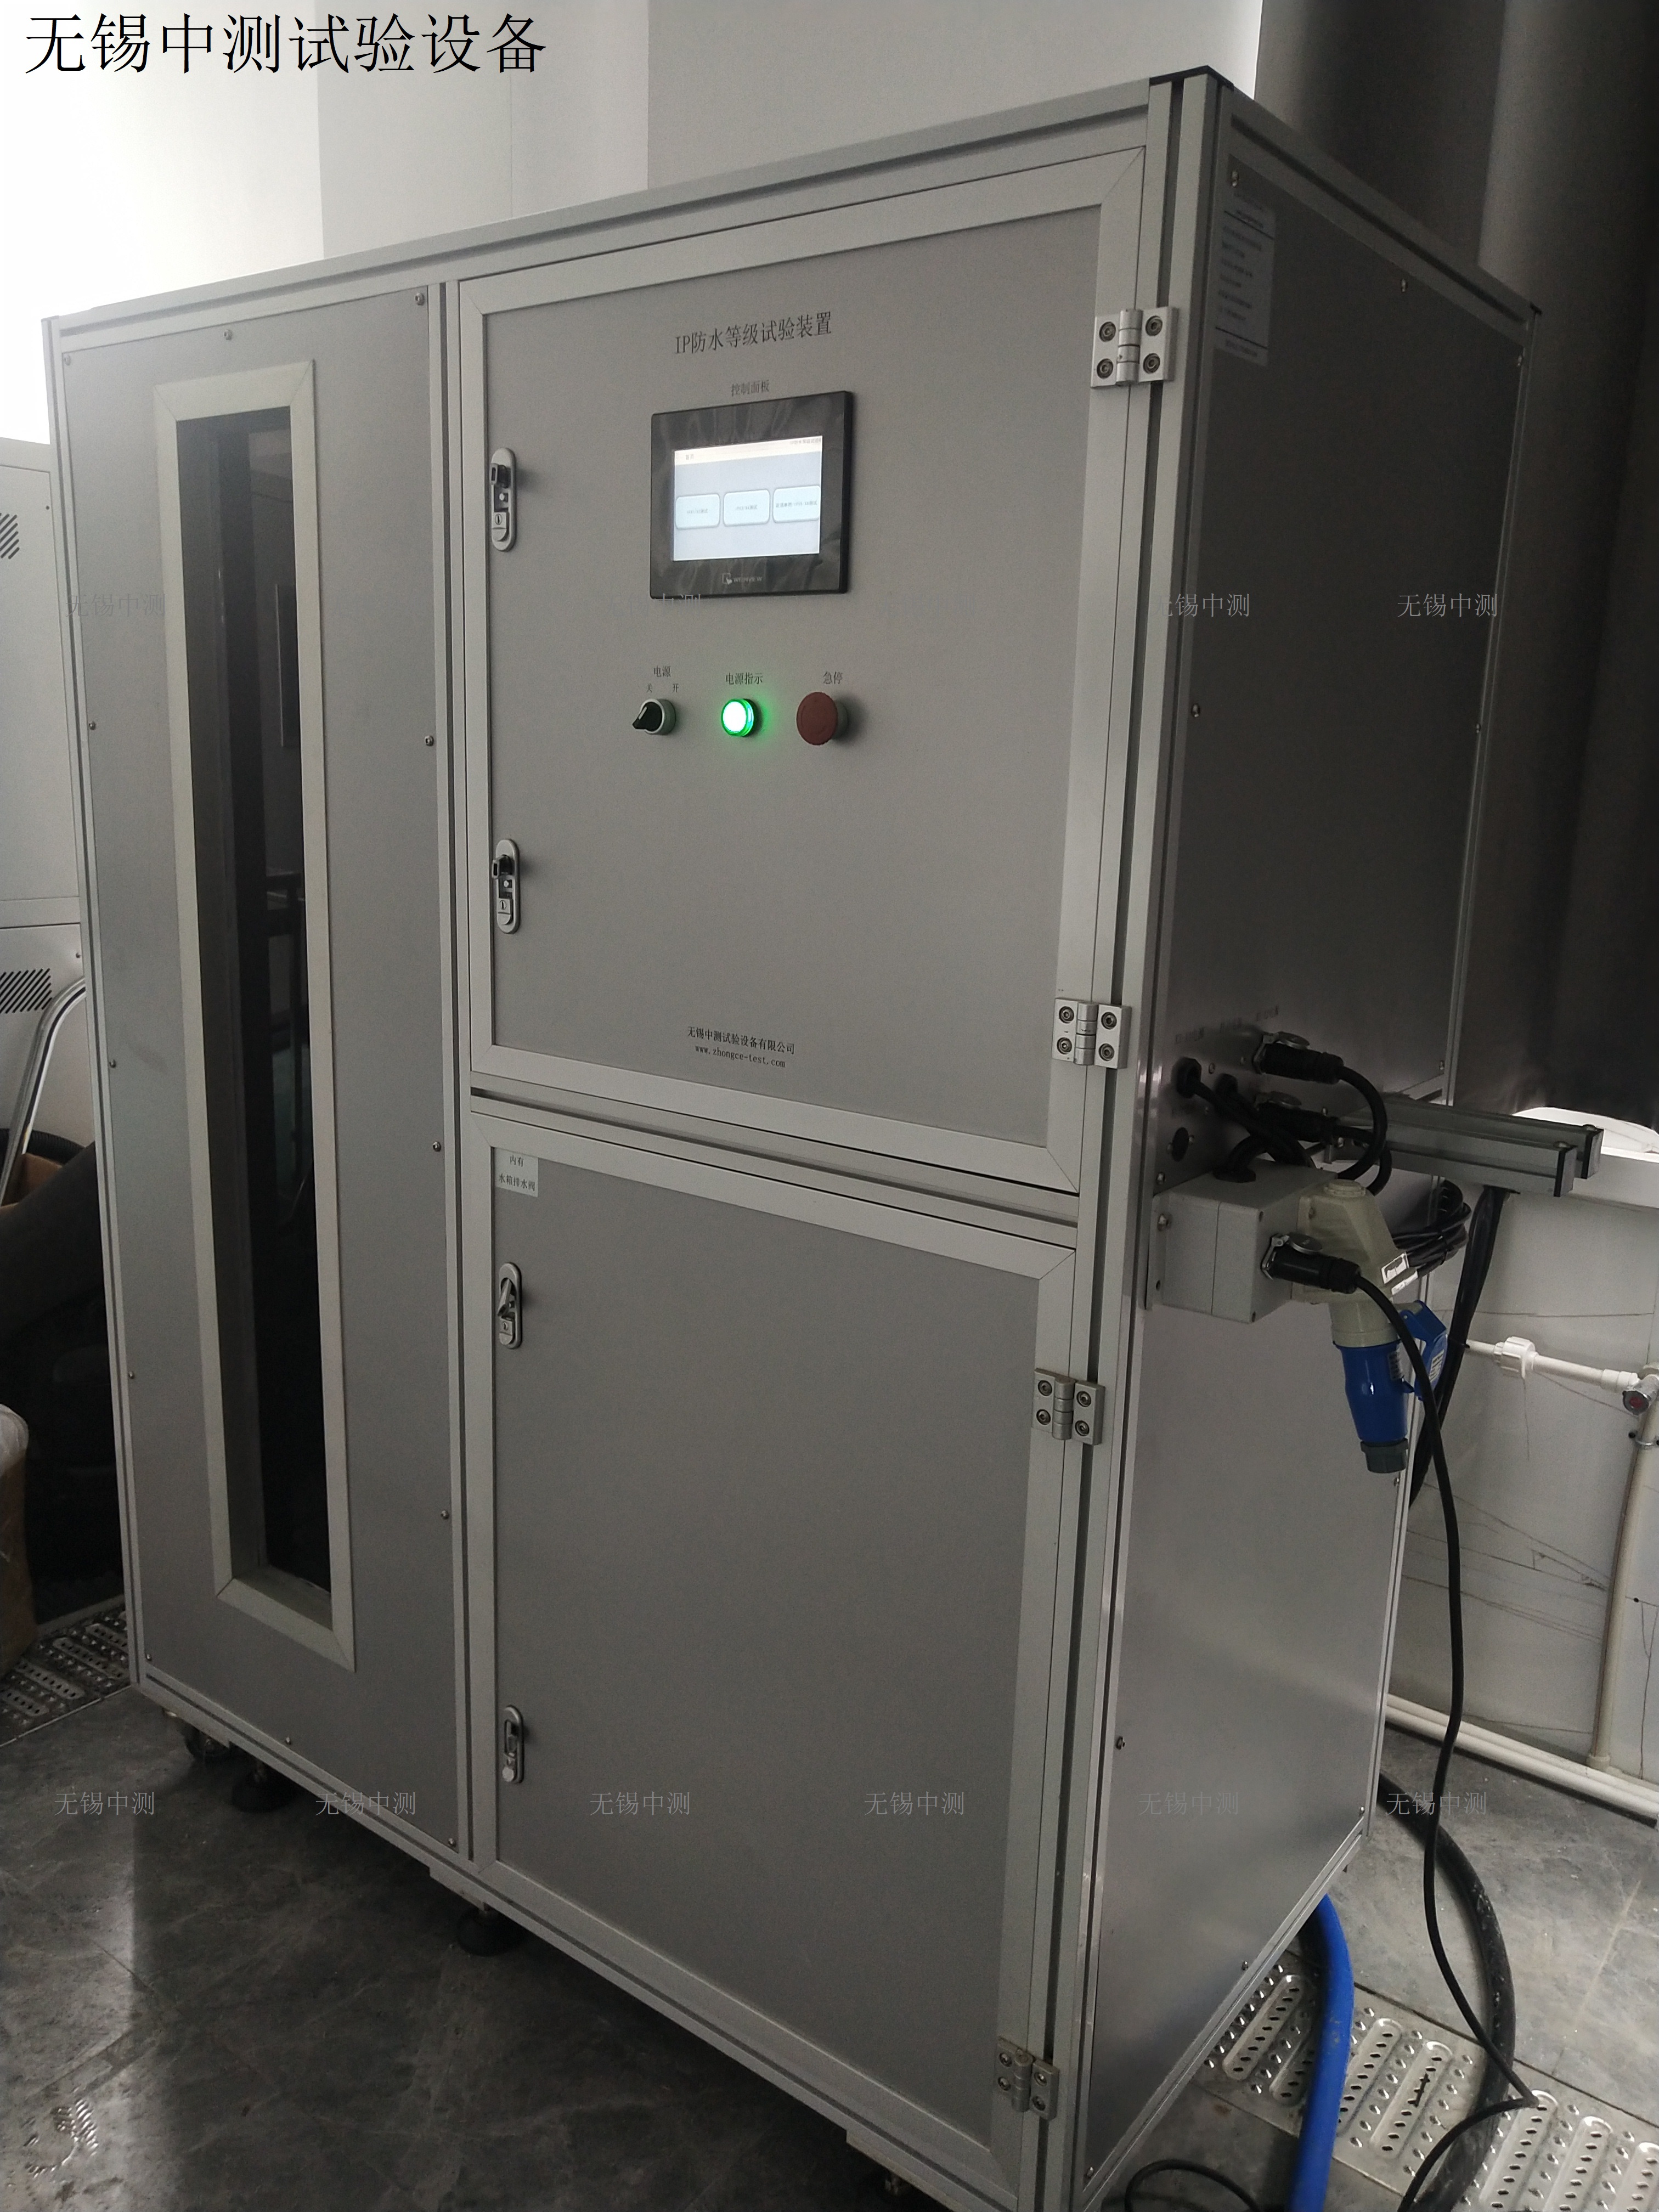 IP防水试验设备 中测IPX56喷水检测设备步入式箱式IP淋雨试验箱中高端品质